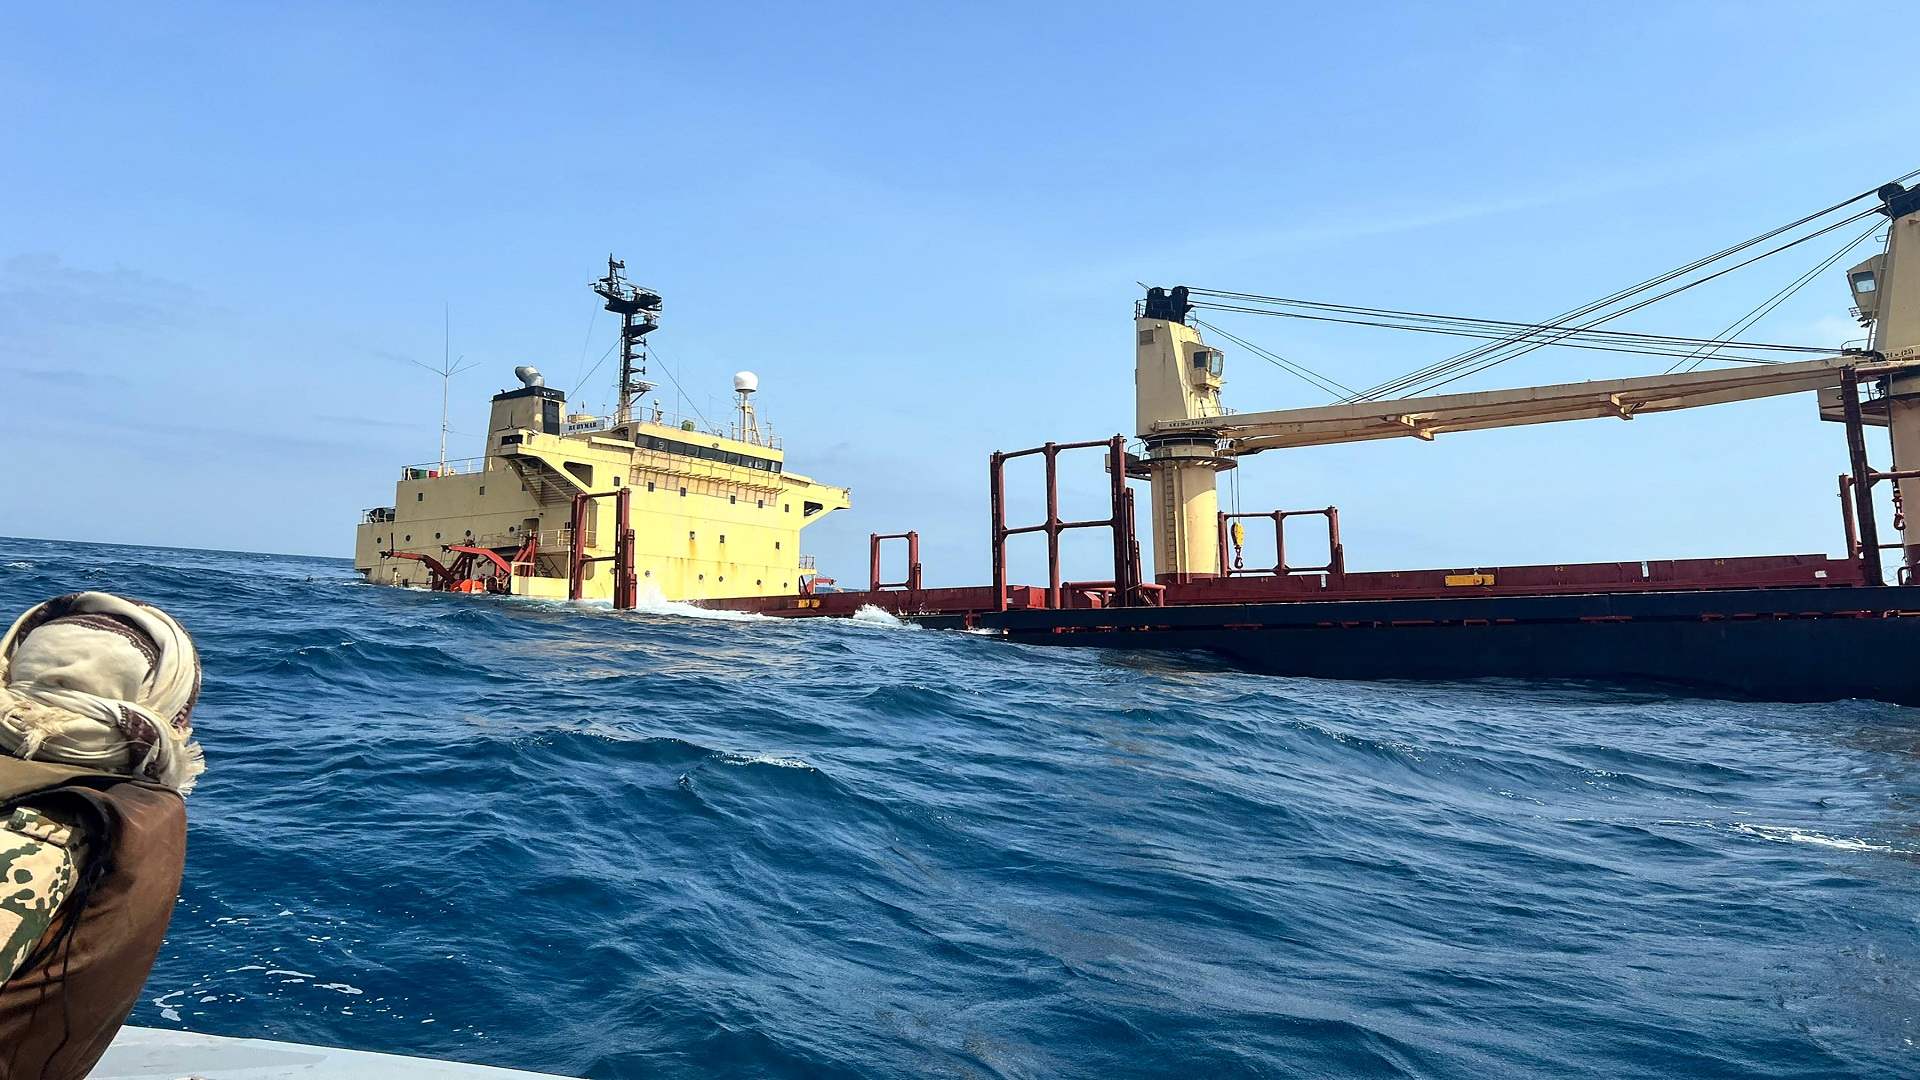 وزير يمني يؤكد غرق السفينة روبيمار بالكامل